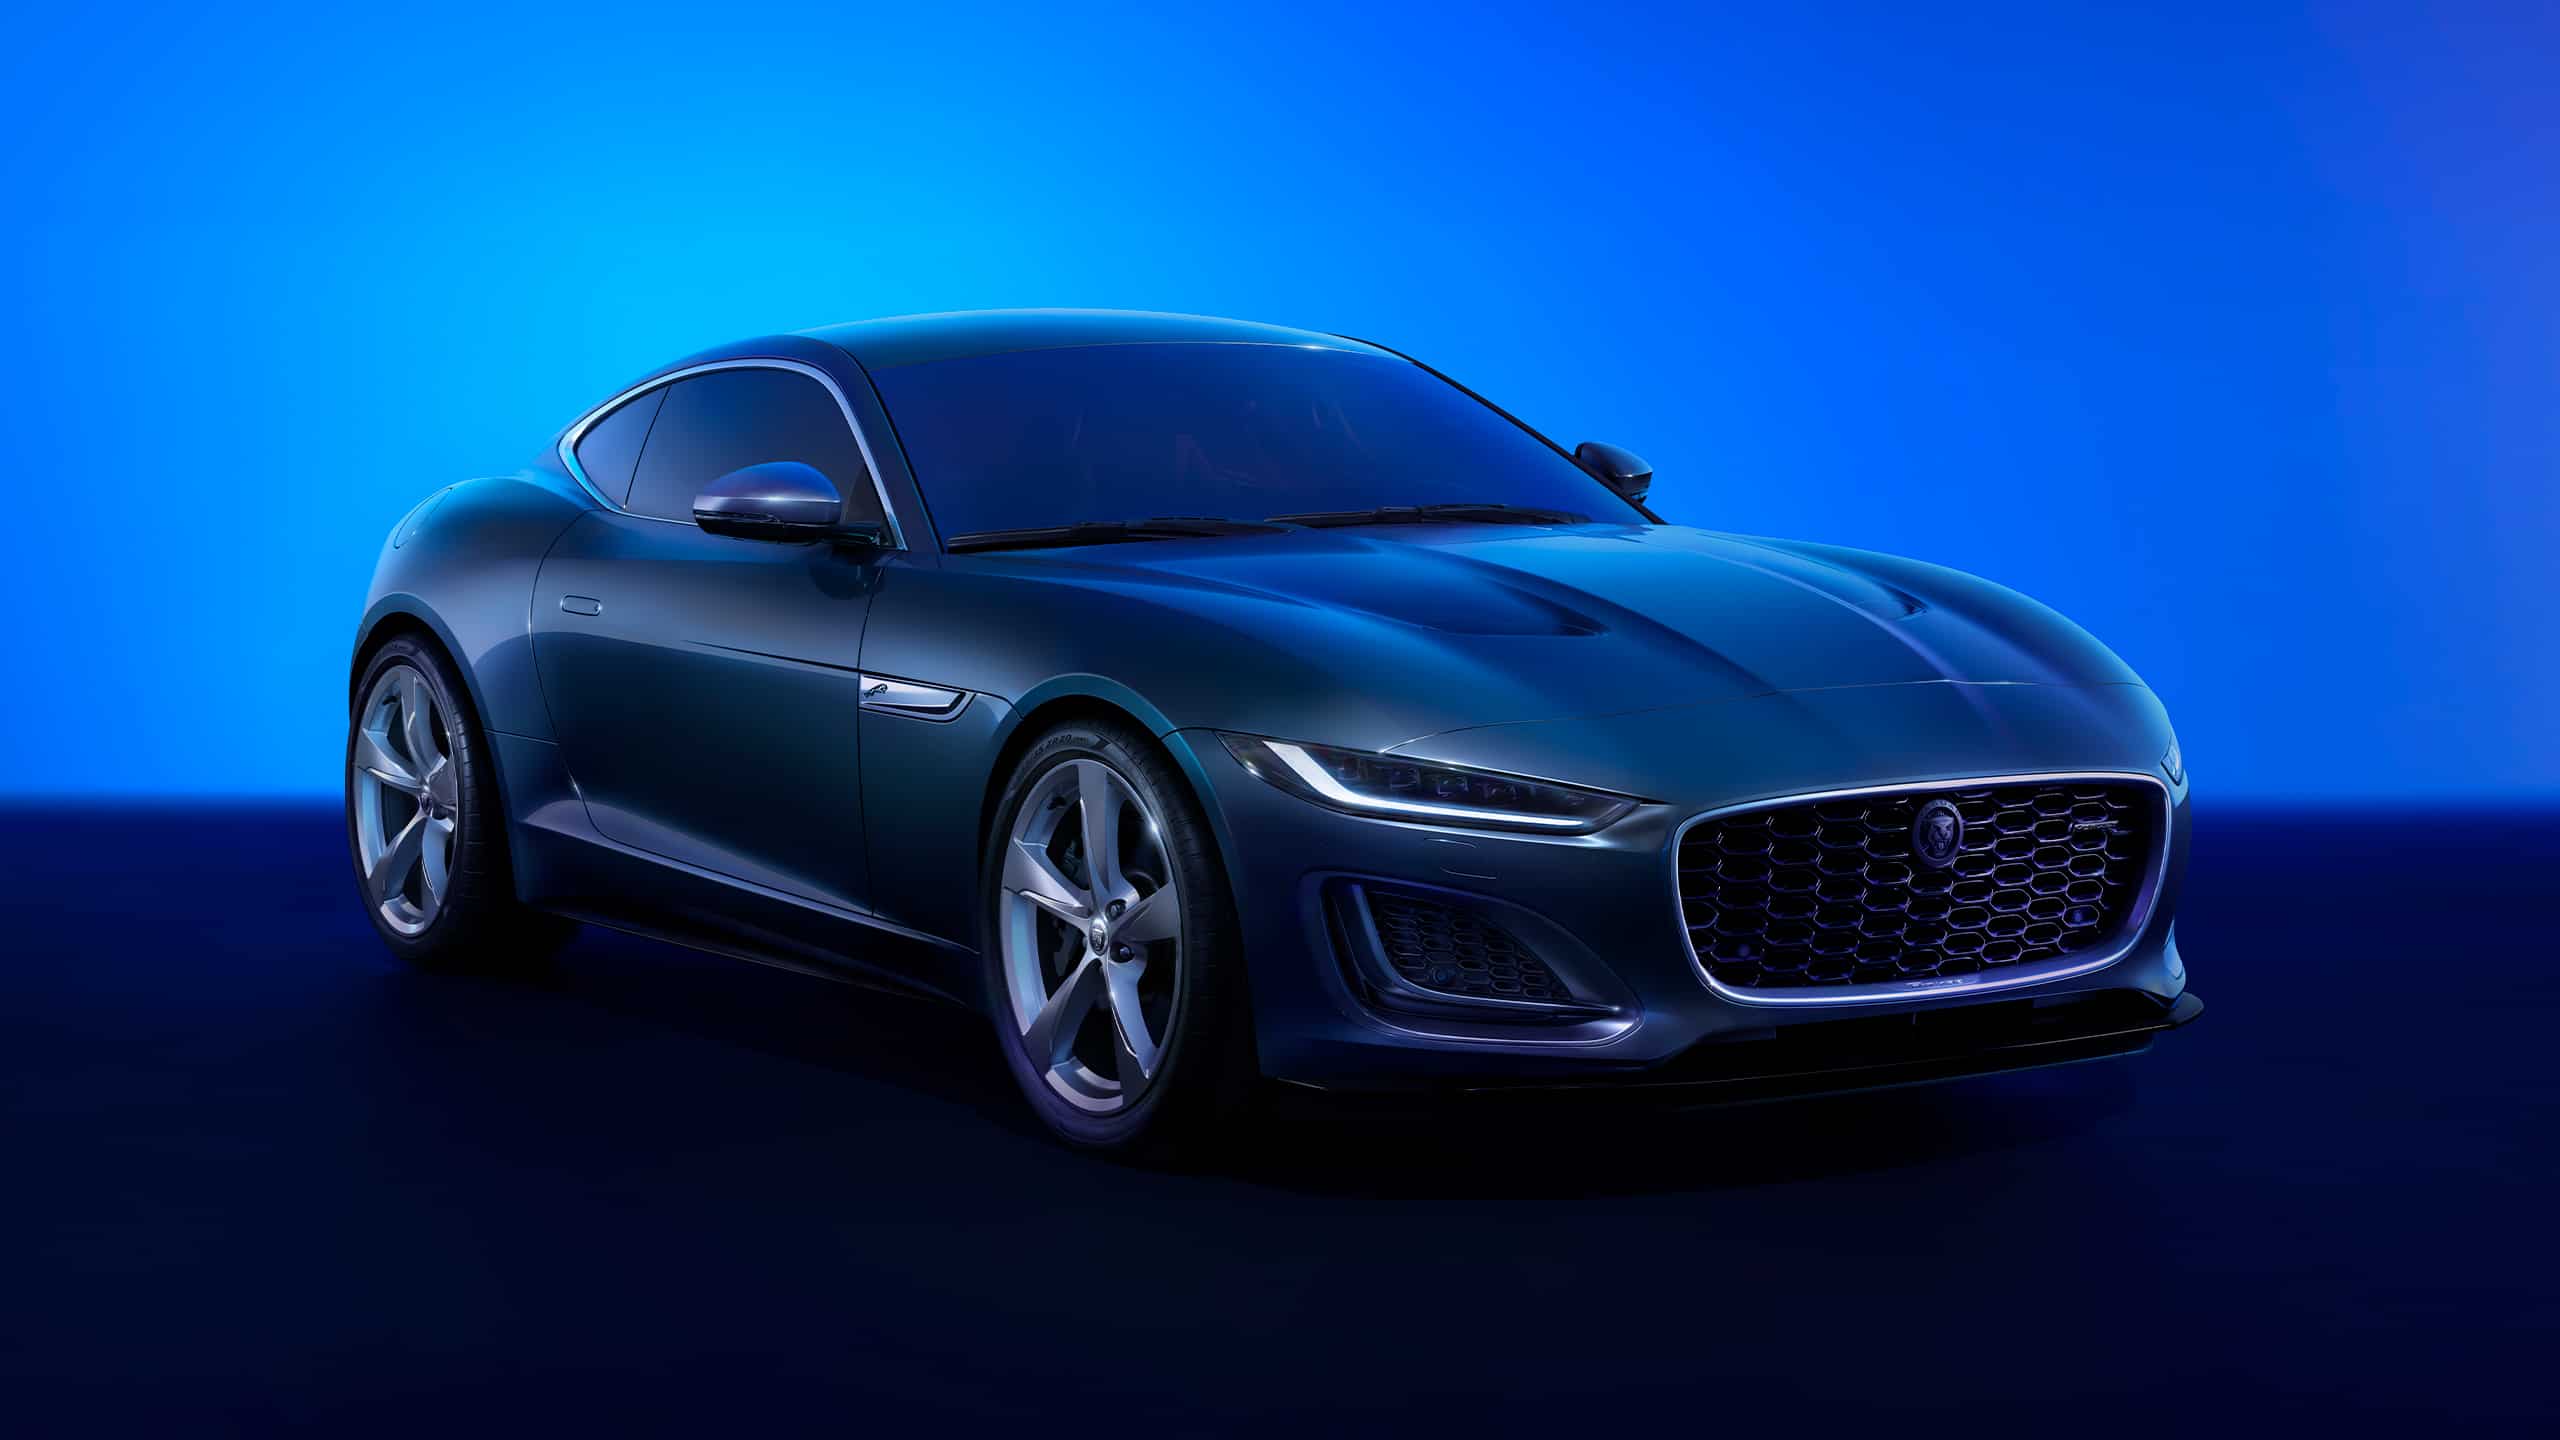 Jaguar F-TYPE, Sports car- All Models